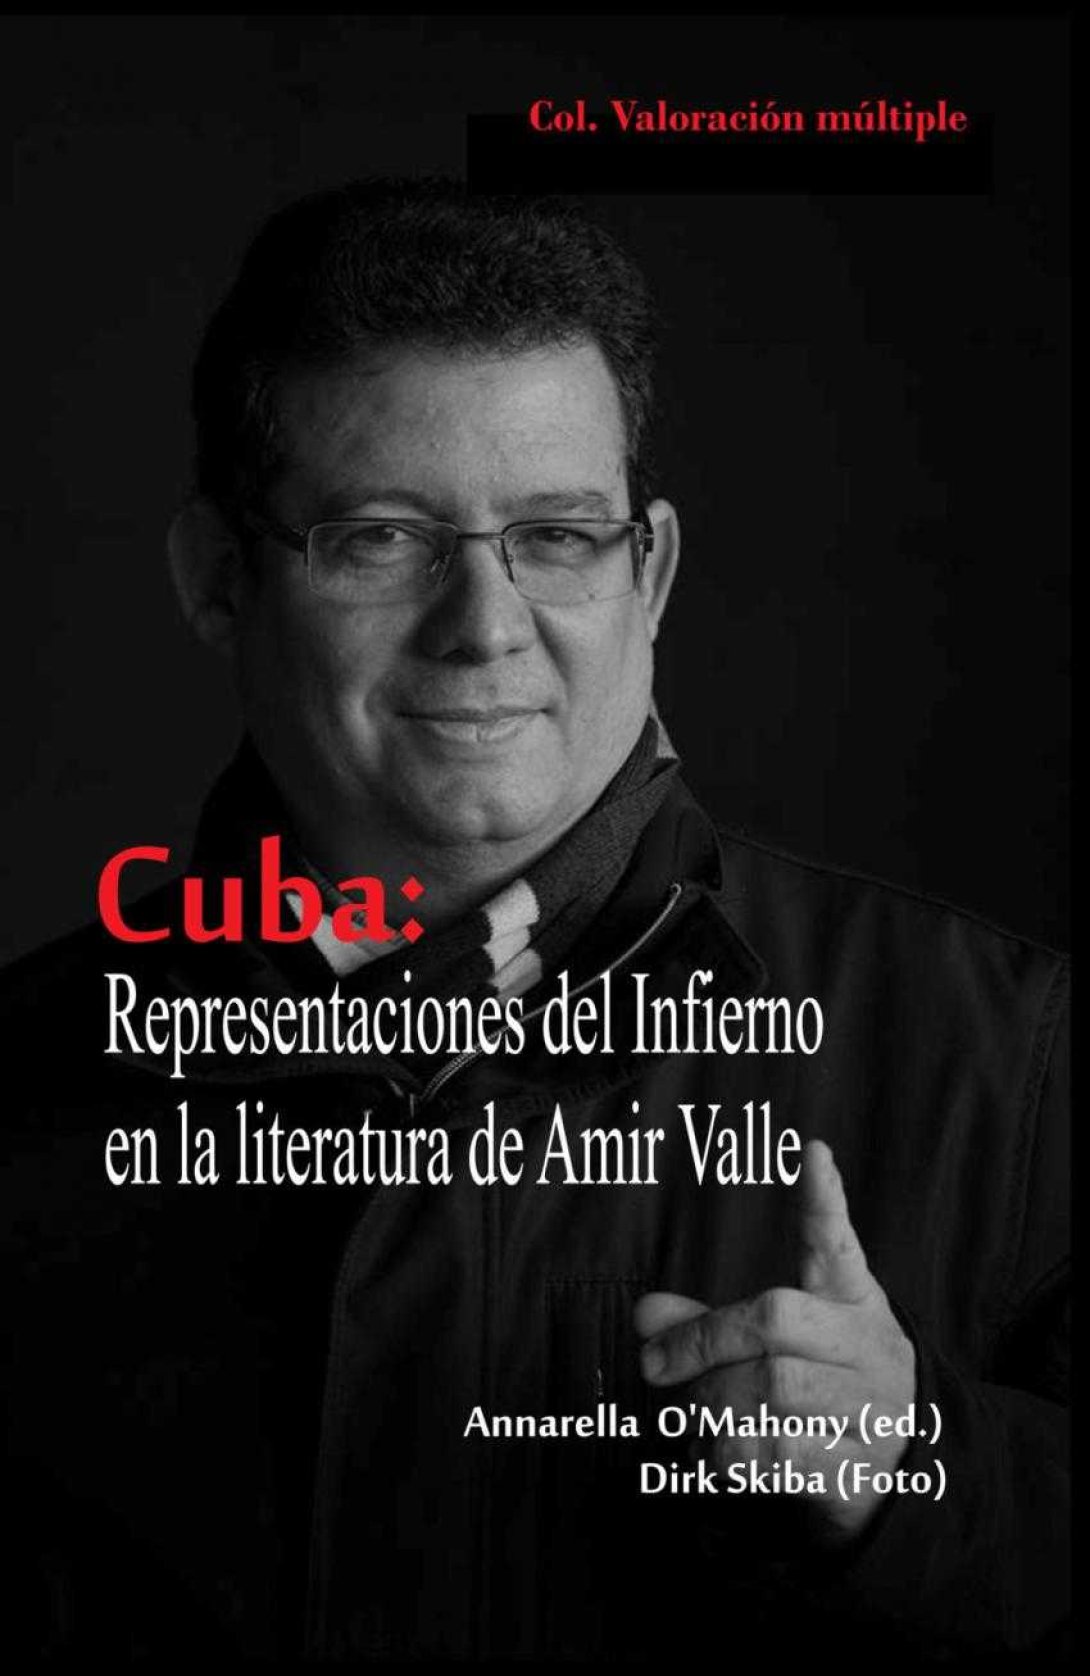 Portada de "Cuba, representaciones del Infierno en la literatura de Amir Valle".